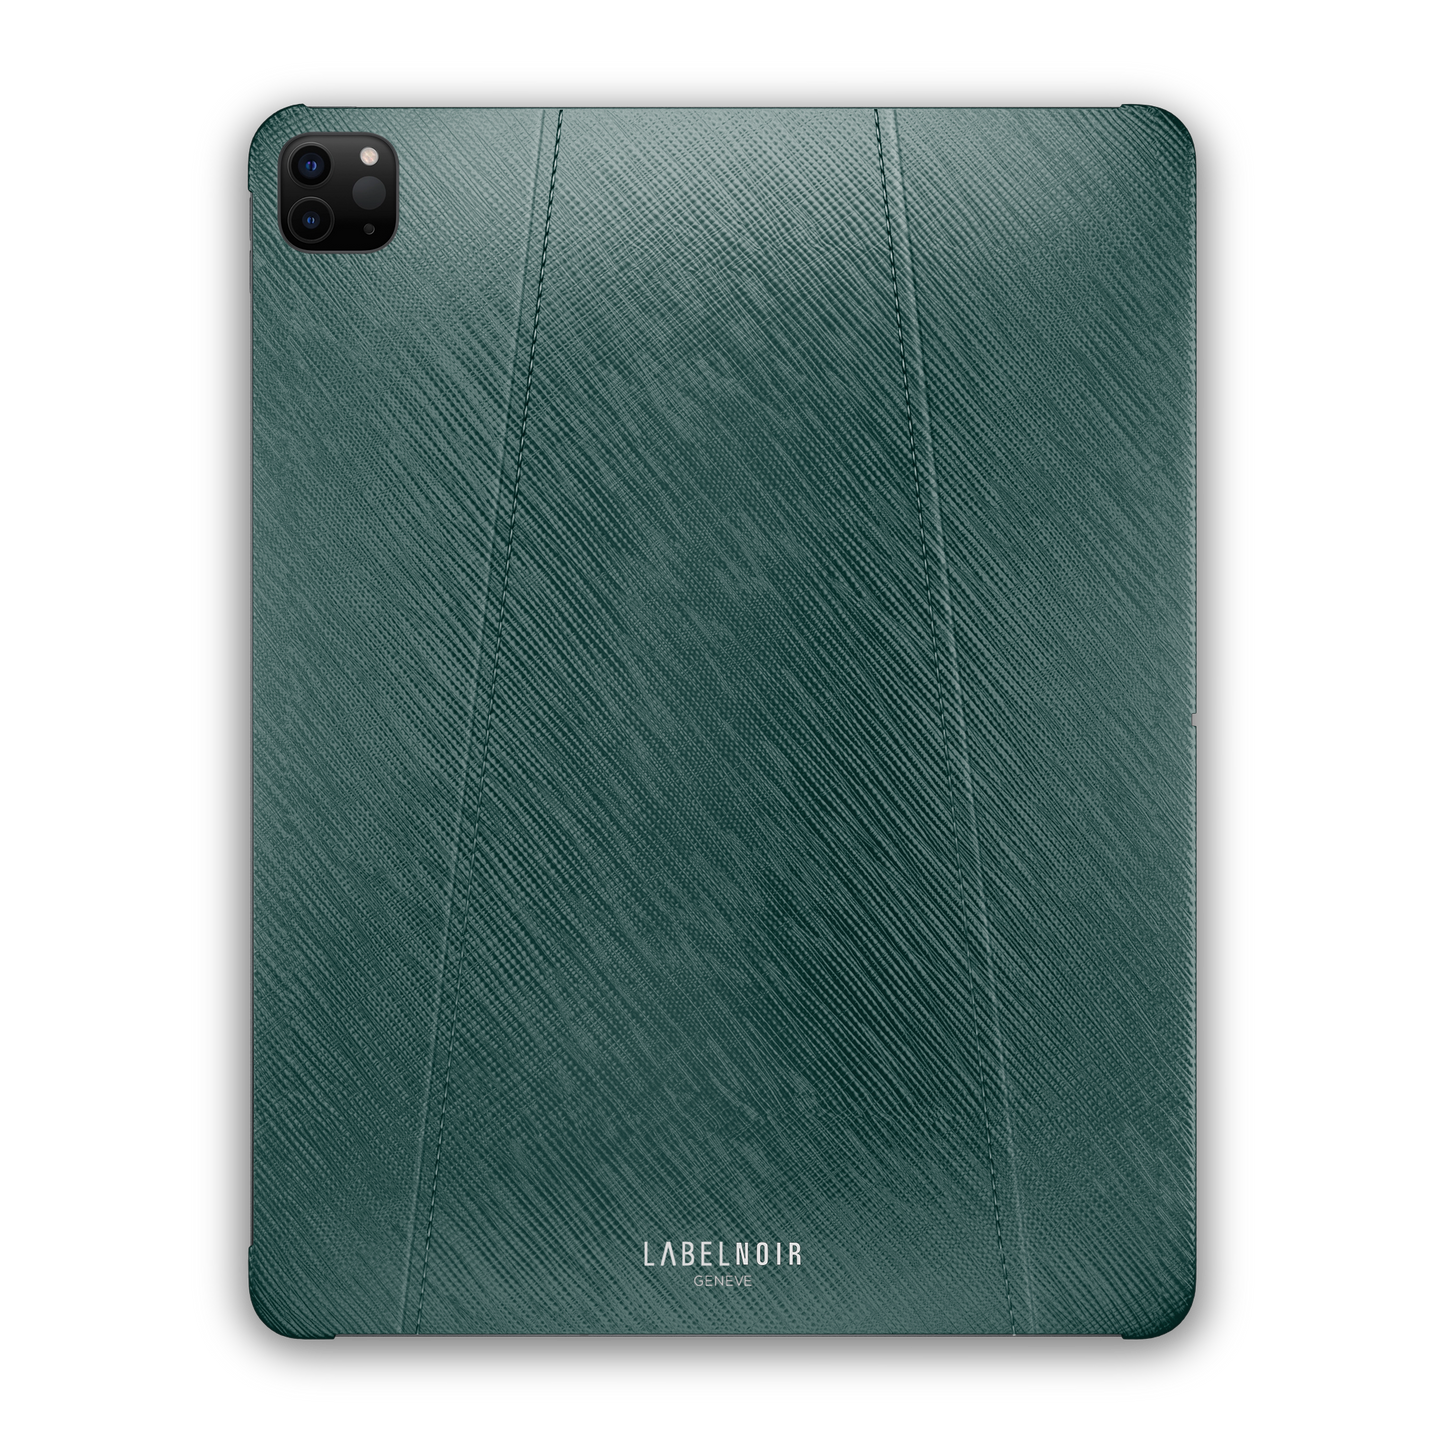 Ipad Mini 8.1-inch Green Sapin Saffiano Case